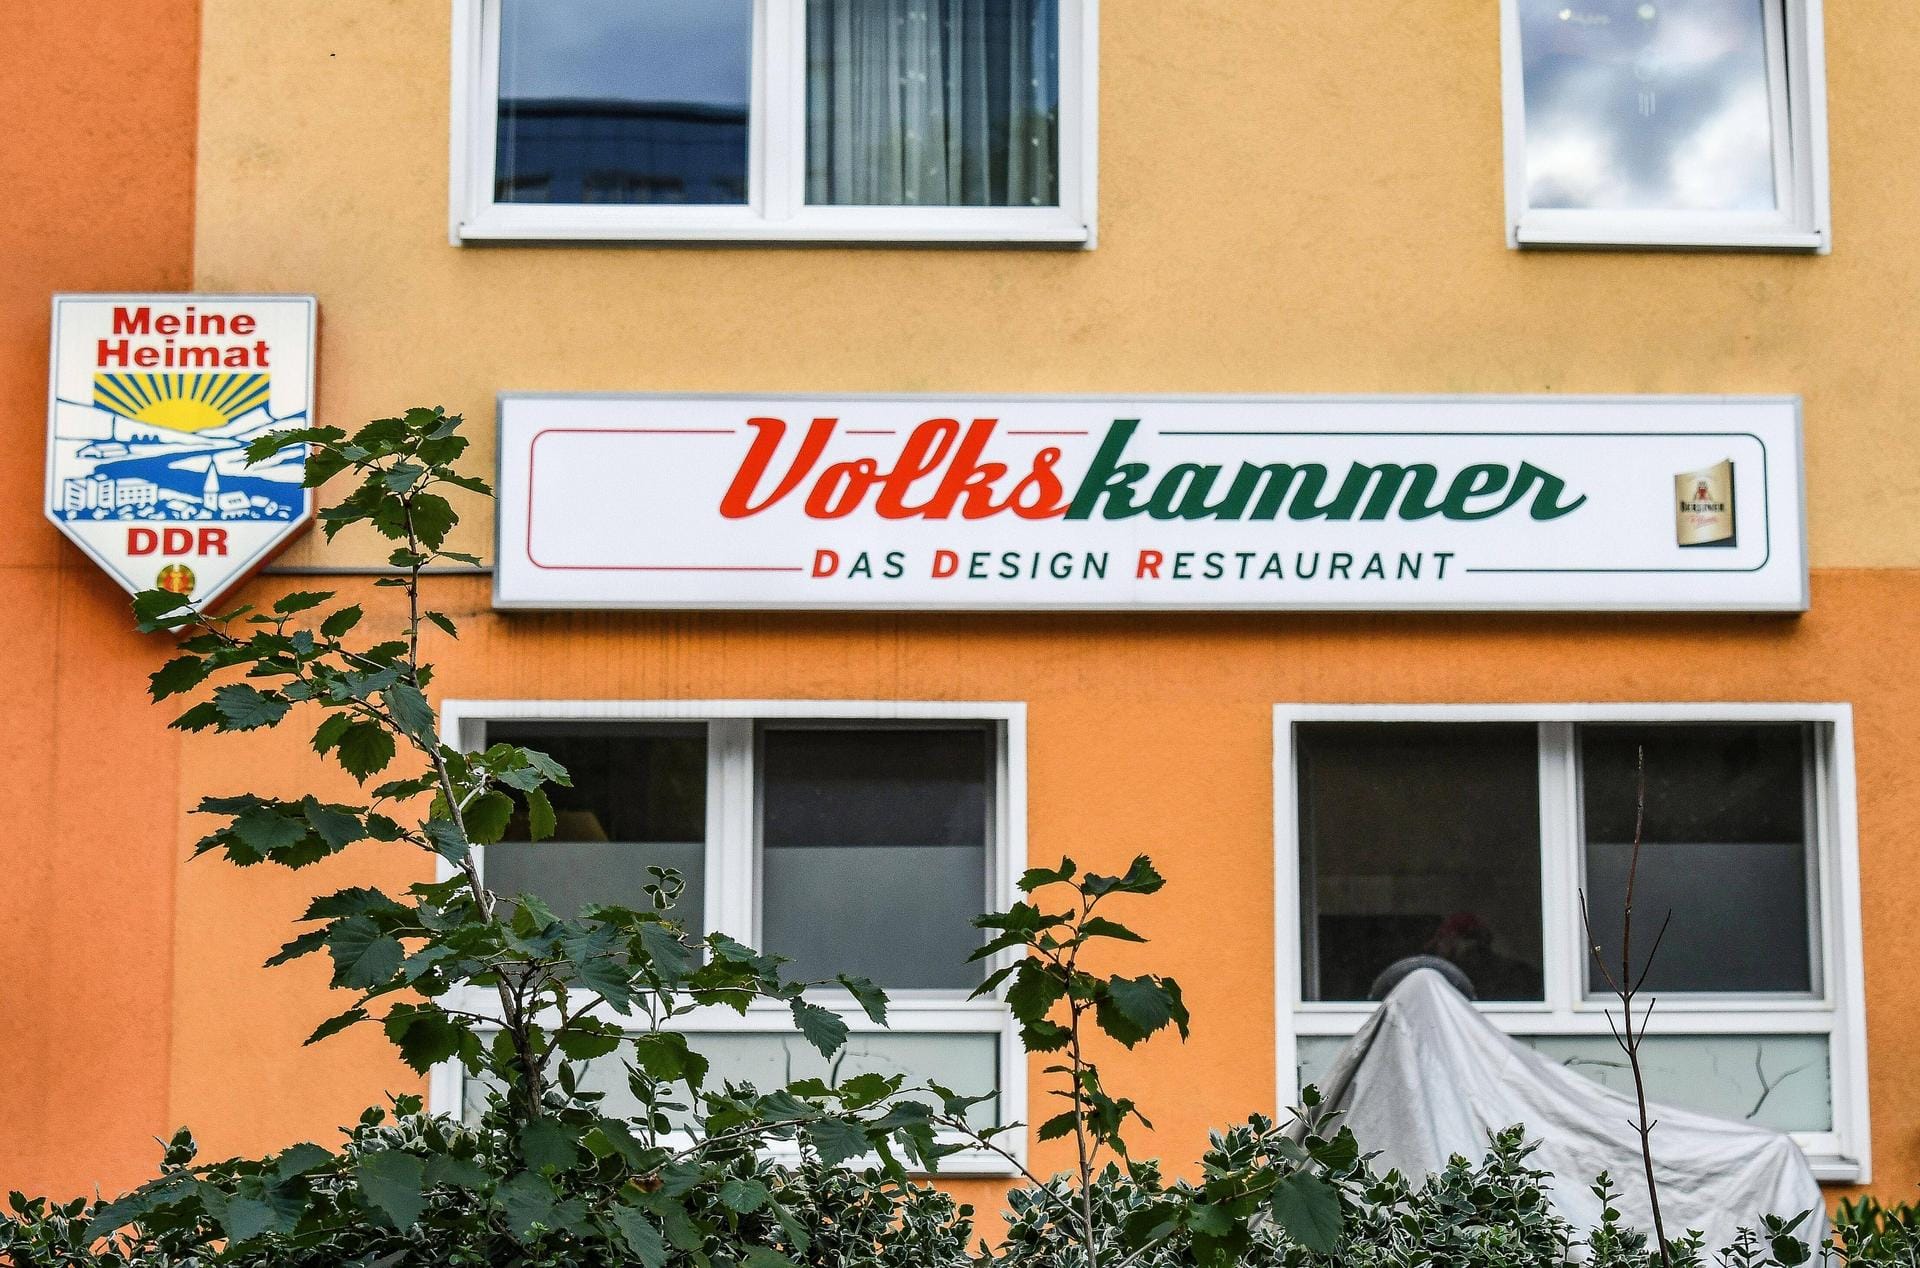 Volkskammer: Das Design Restaurant befindet sich nur wenige Meter vom Ostbahnhof und der East Side Gallery entfernt und gleicht den früheren DDR-Restaurants.